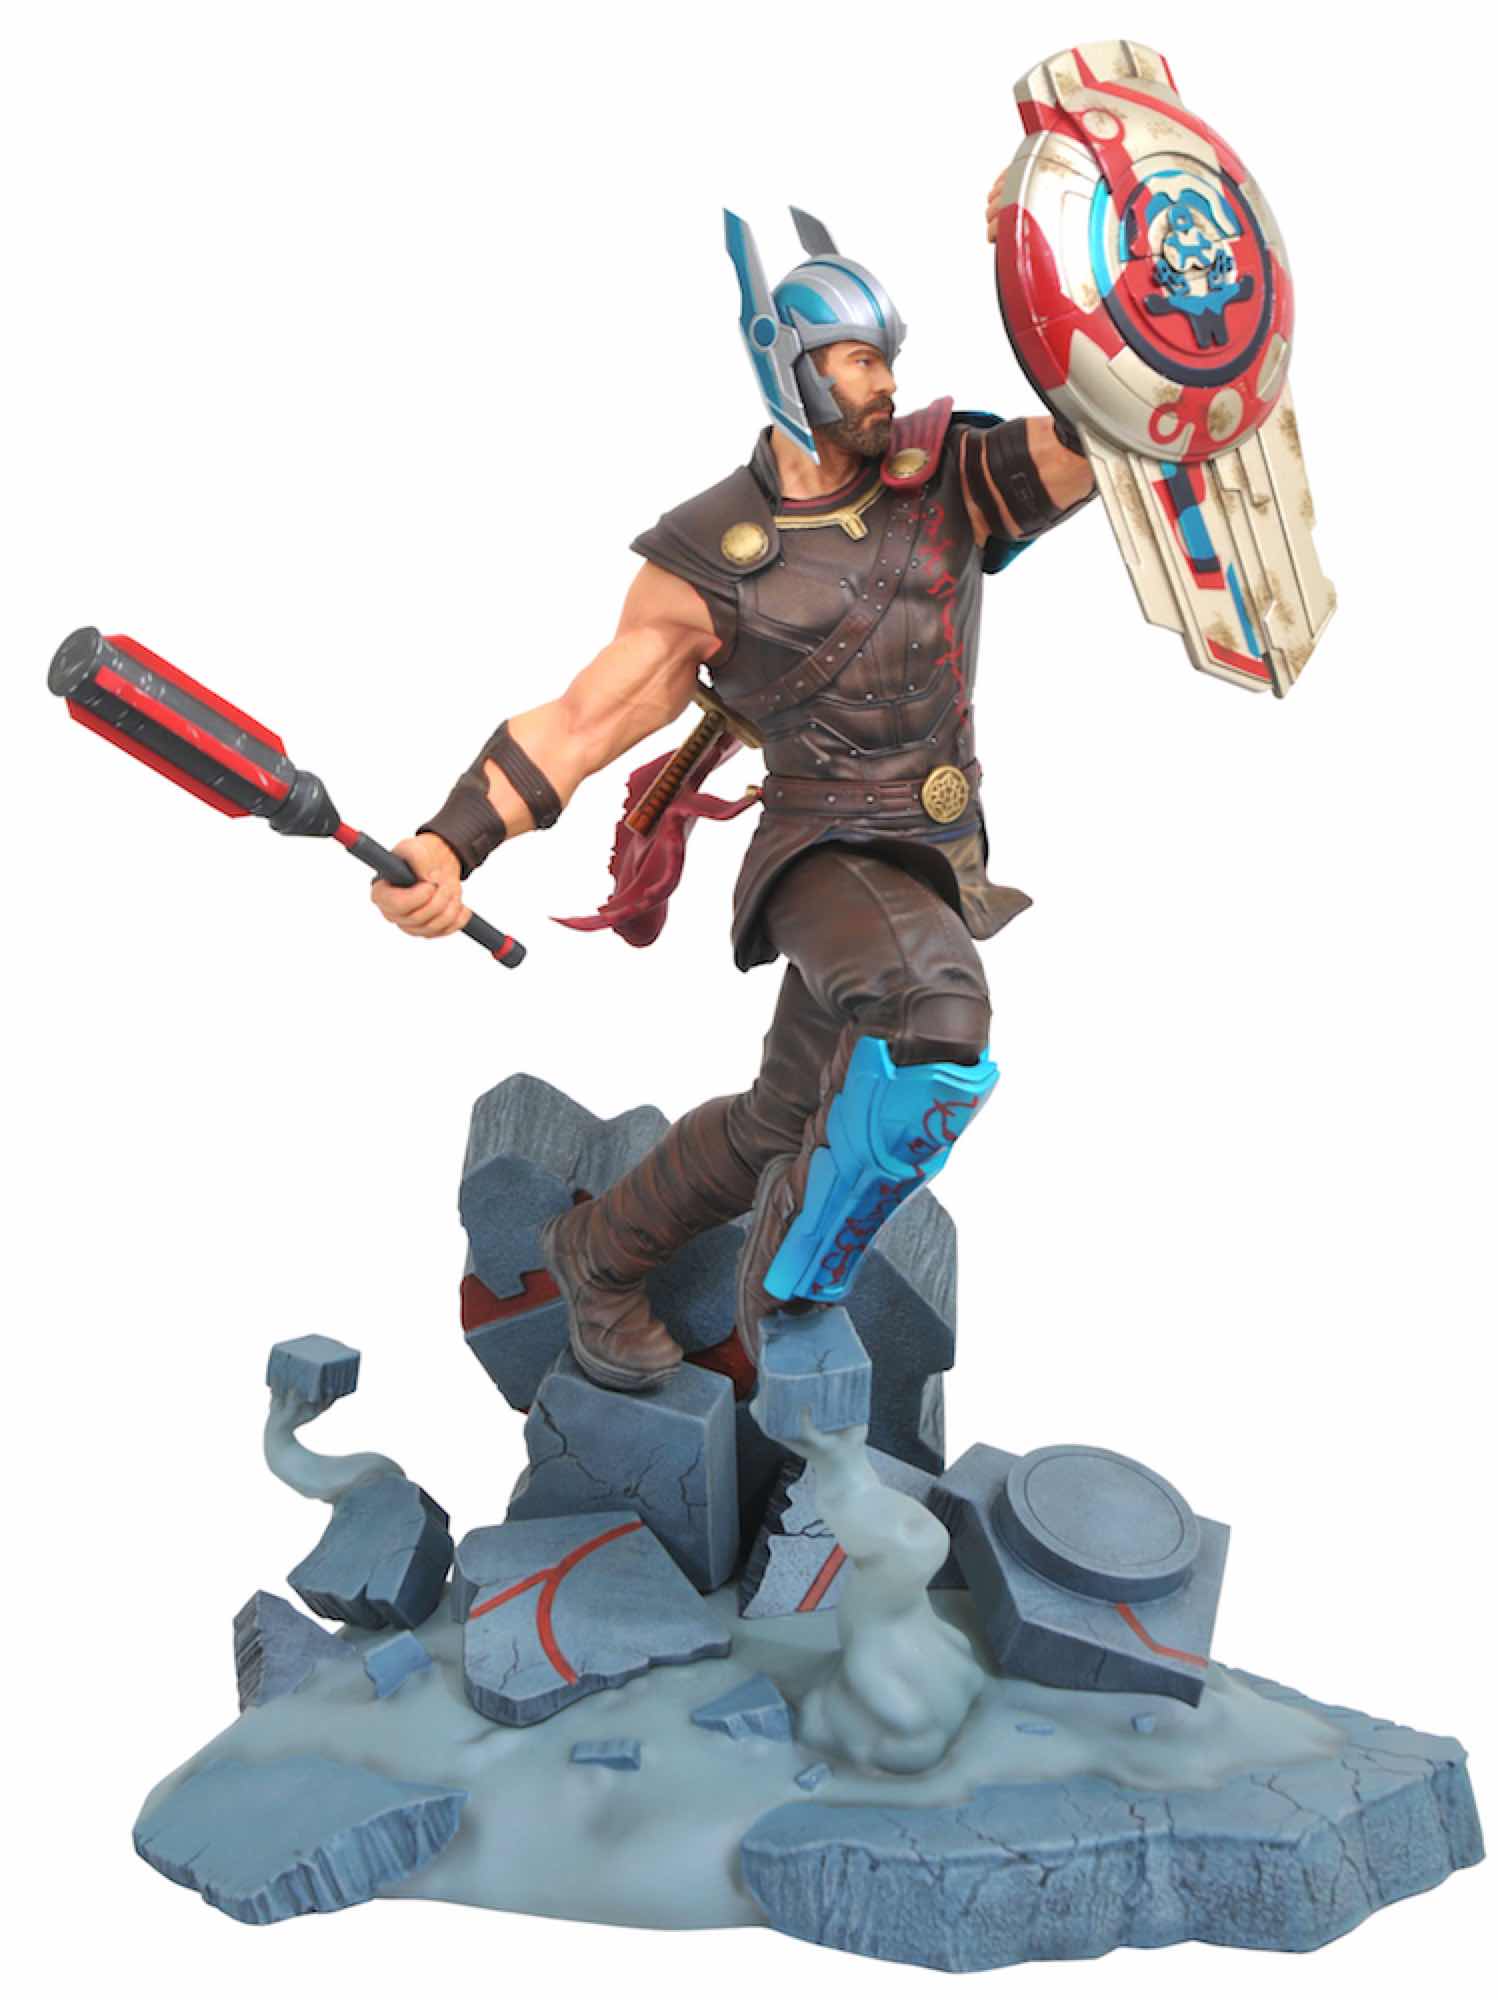 Estátua Thor Com Machado Resina Realista 18cm Altura Marvel